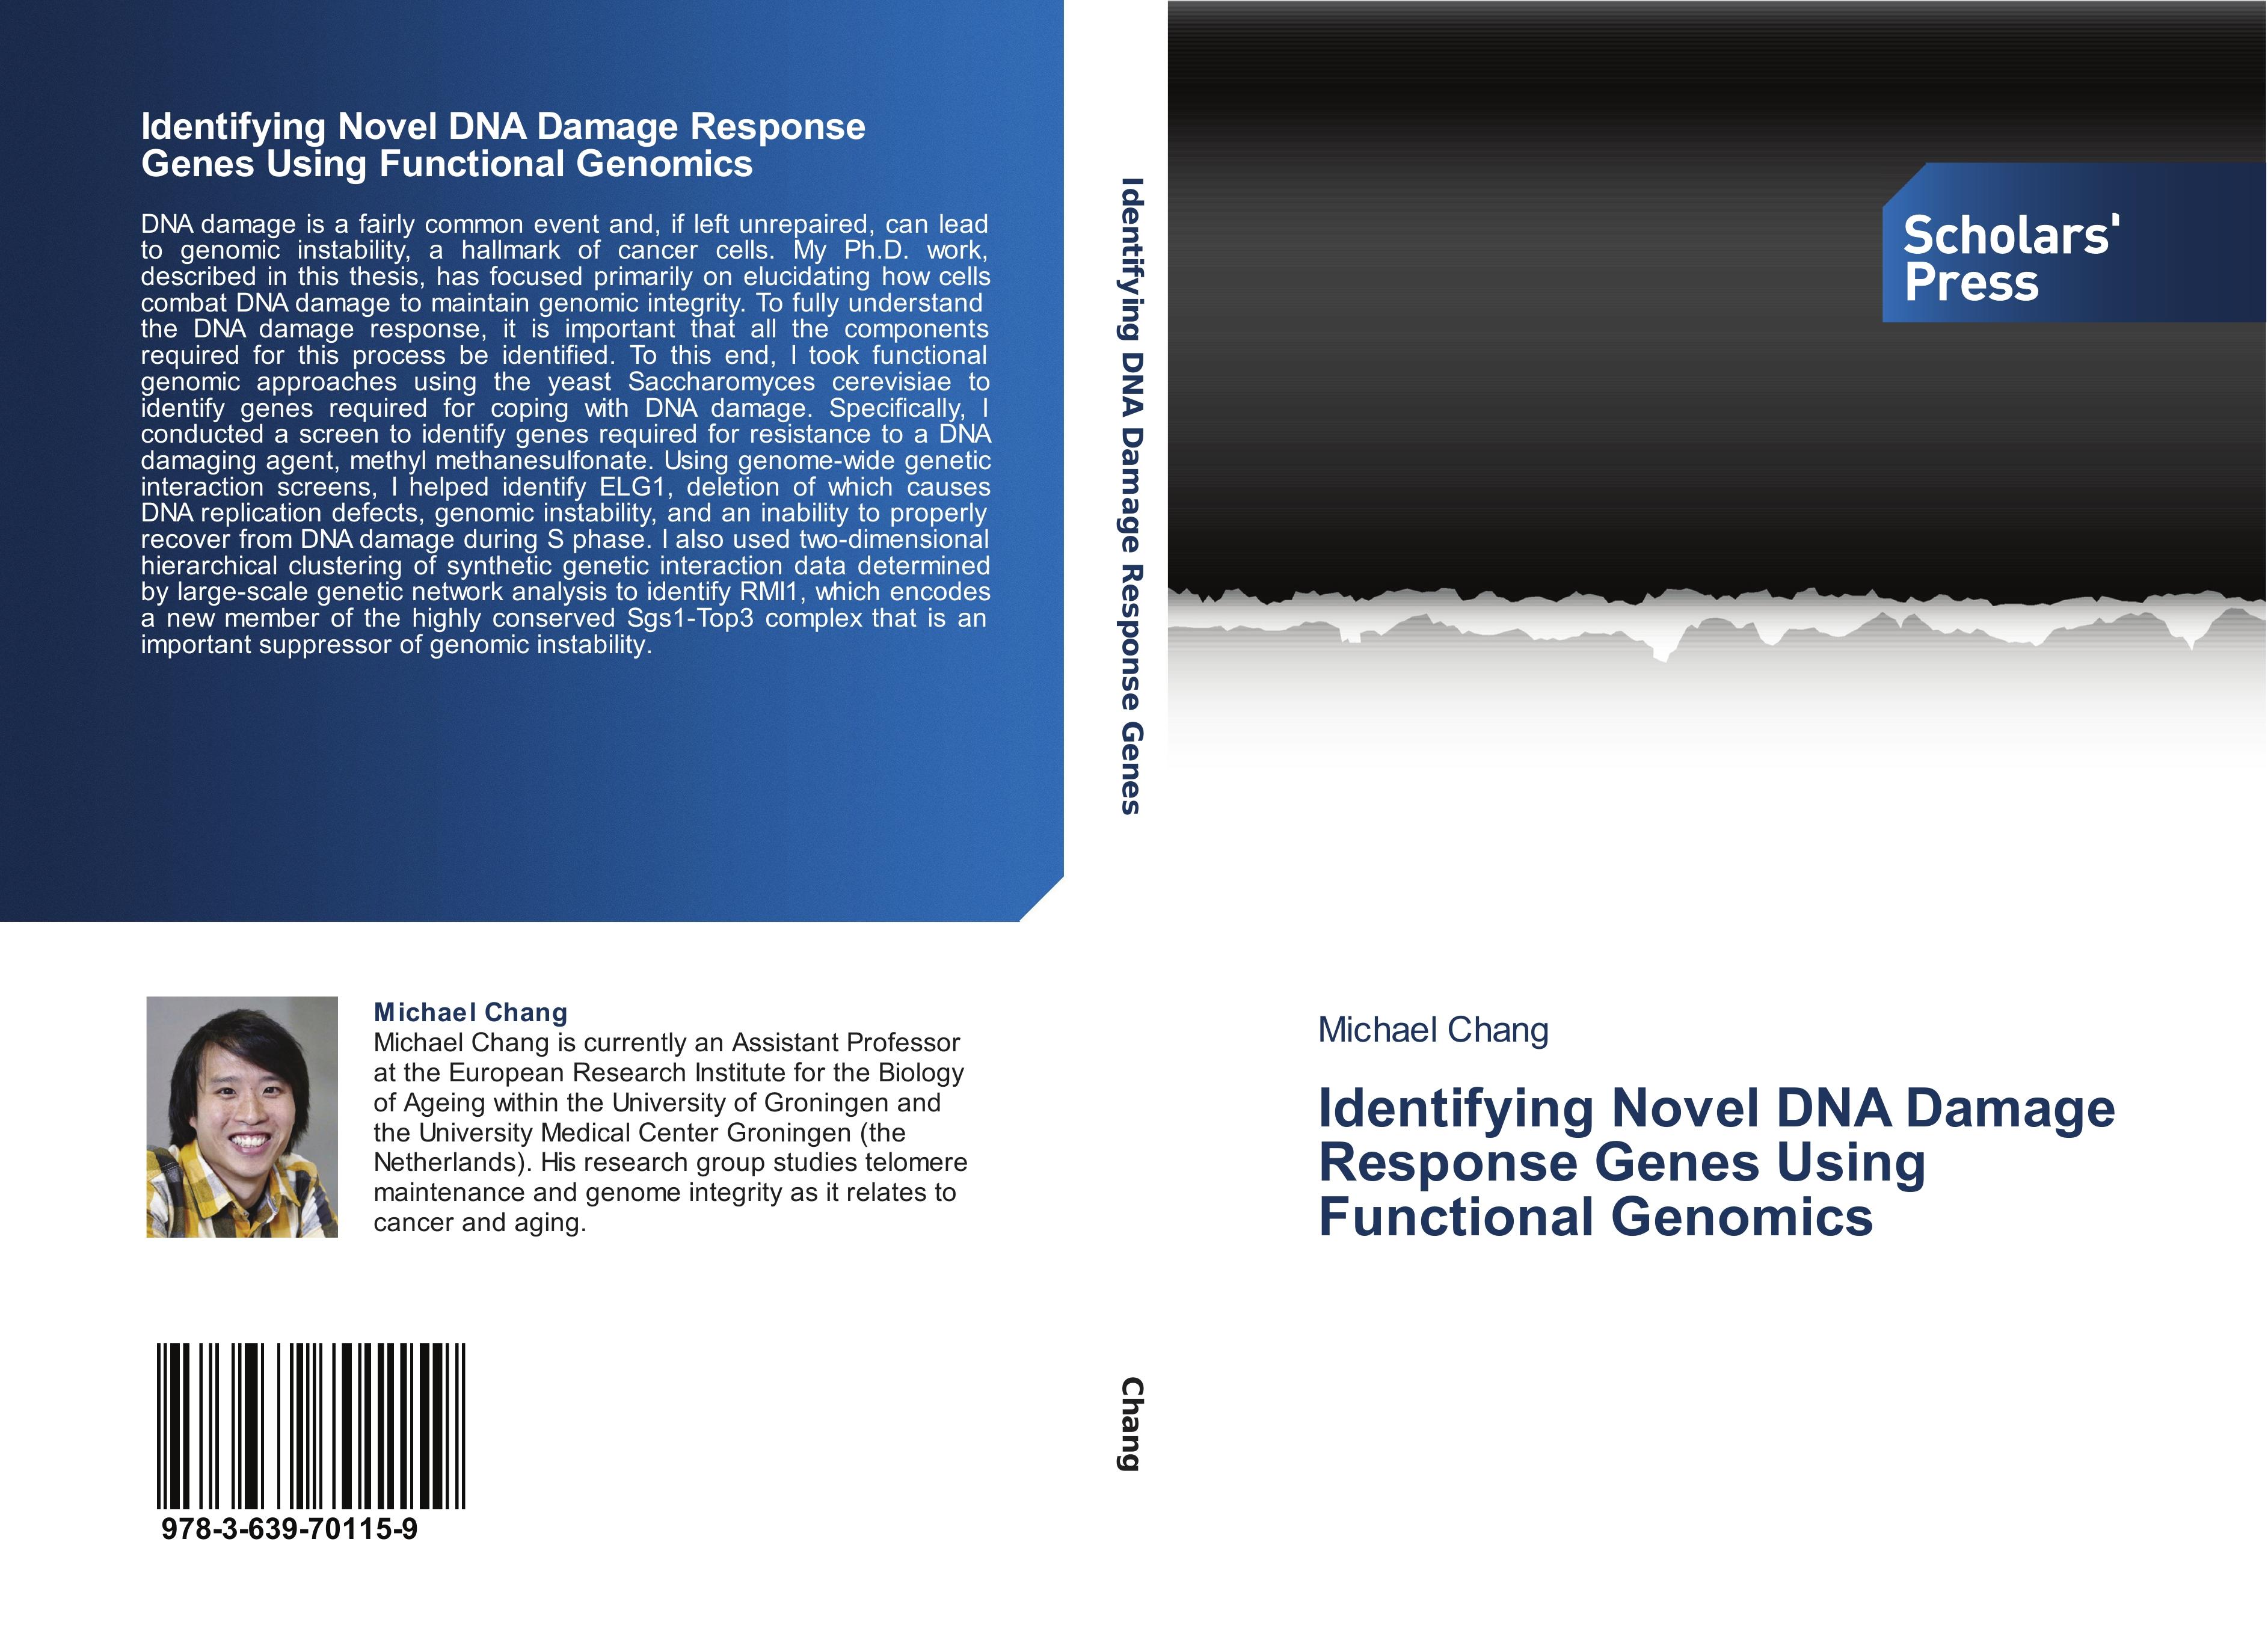 Identifying Novel DNA Damage Response Genes Using Functional Genomics - Michael Chang